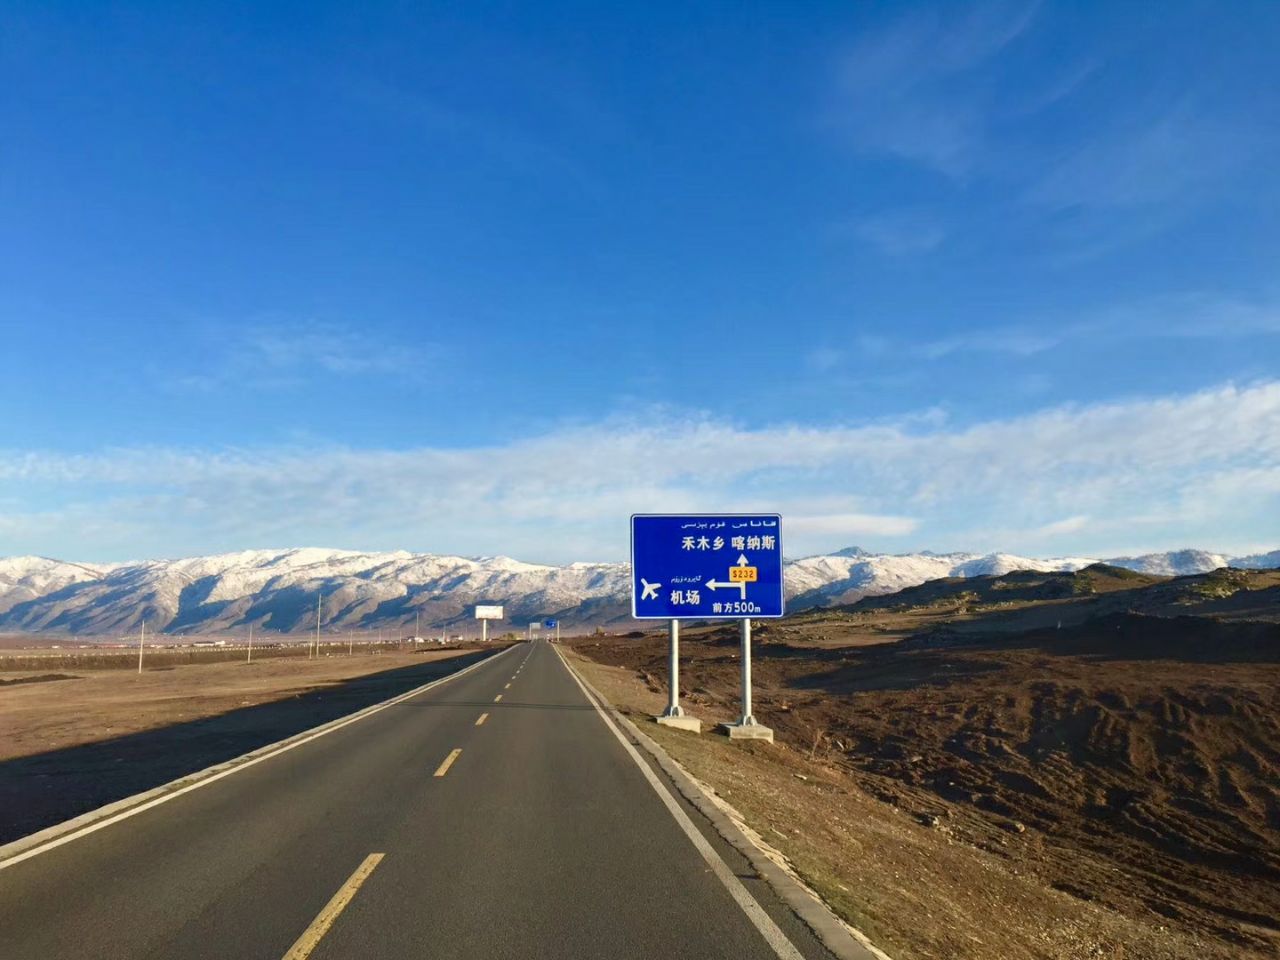 新疆塔城阿尔泰山-塔城旅游景点-新疆旅游景点-新疆中旅国际旅行社